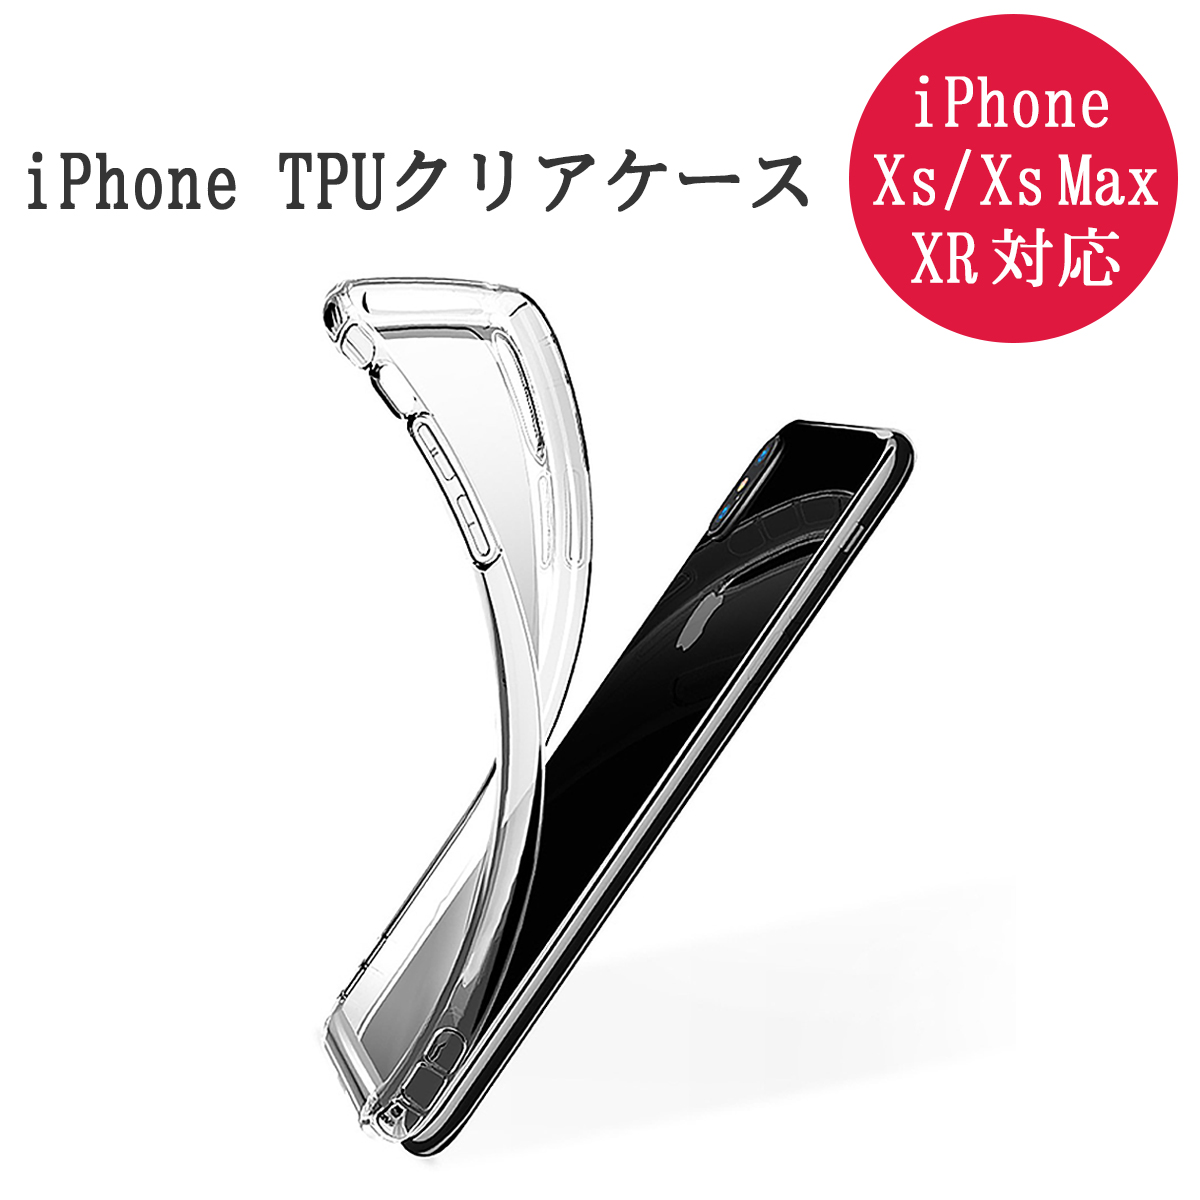 スマートフォン ケース 2個セット iPhone X XS MAX XR 8 7 Plus SE第2世代 極薄型 TPUケース アイフォン 衝撃吸収 傷防止 スリップ防止 放熱 防水 防塵 SDM便送料無料 1ヶ月保証